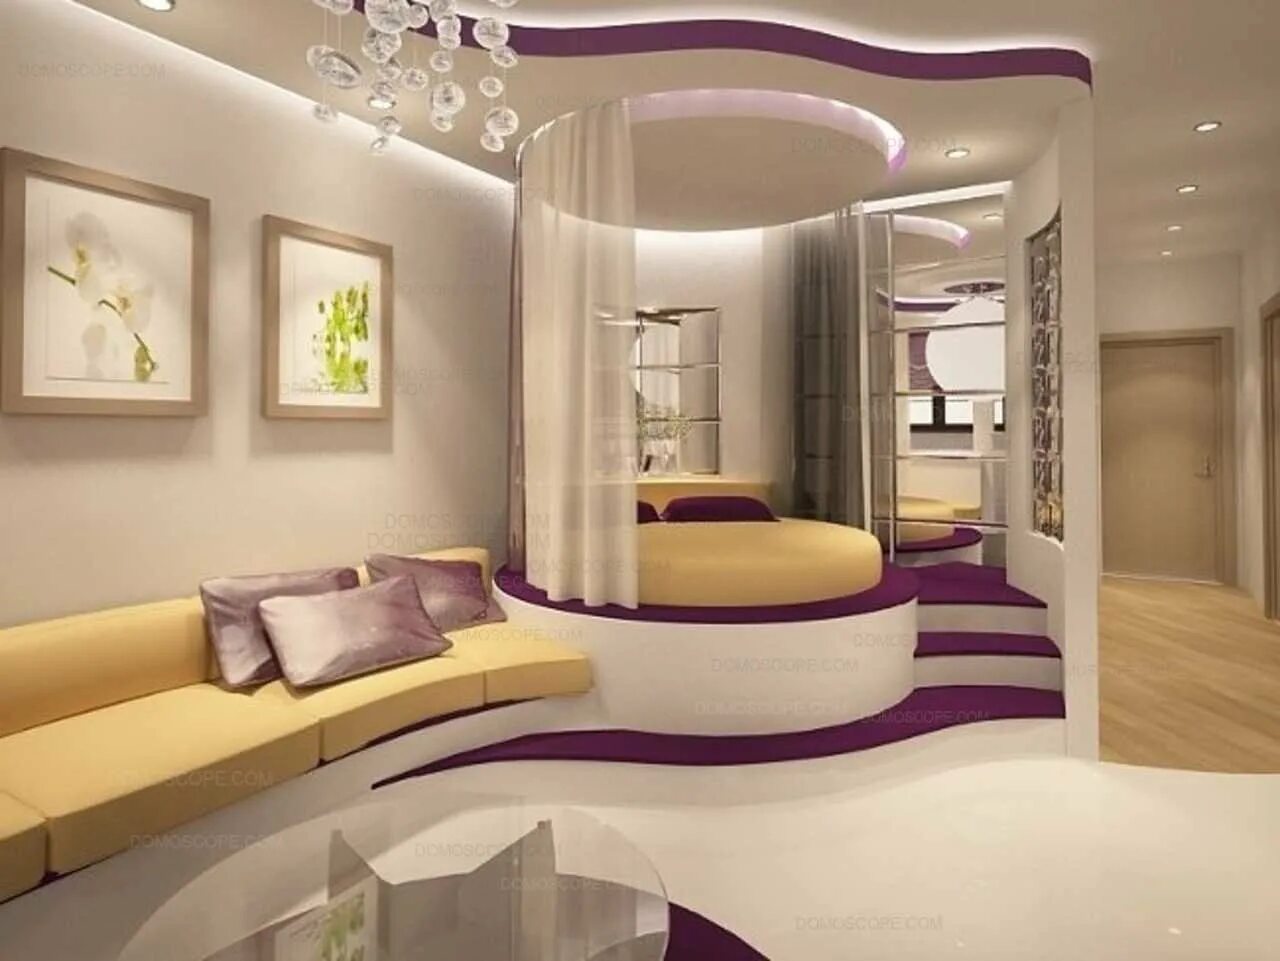 Дизайн подиум. Круглая кровать на подиуме. Круглая кровать в интерьере. Гостиная с круглой кроватью. Круглая кровать на подиуме в интерьере.